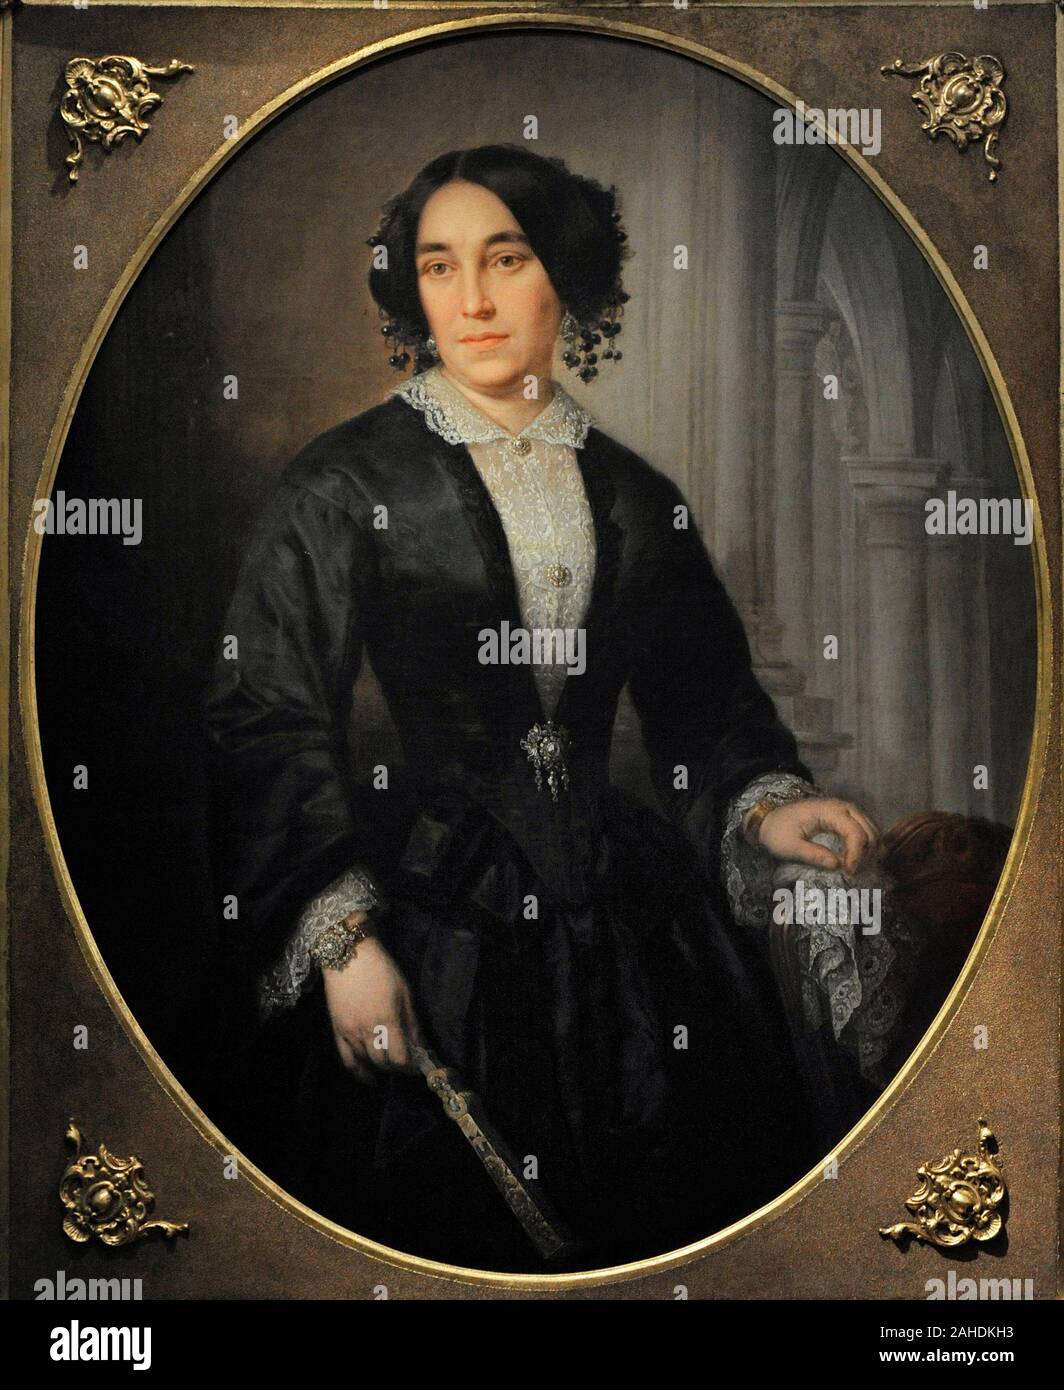 Jose Maria Romero Lopez (1816-1894). Spanischer Maler. Bildnis einer Dame, 1853. Museum der Romantik. Madrid. Spanien. Stockfoto